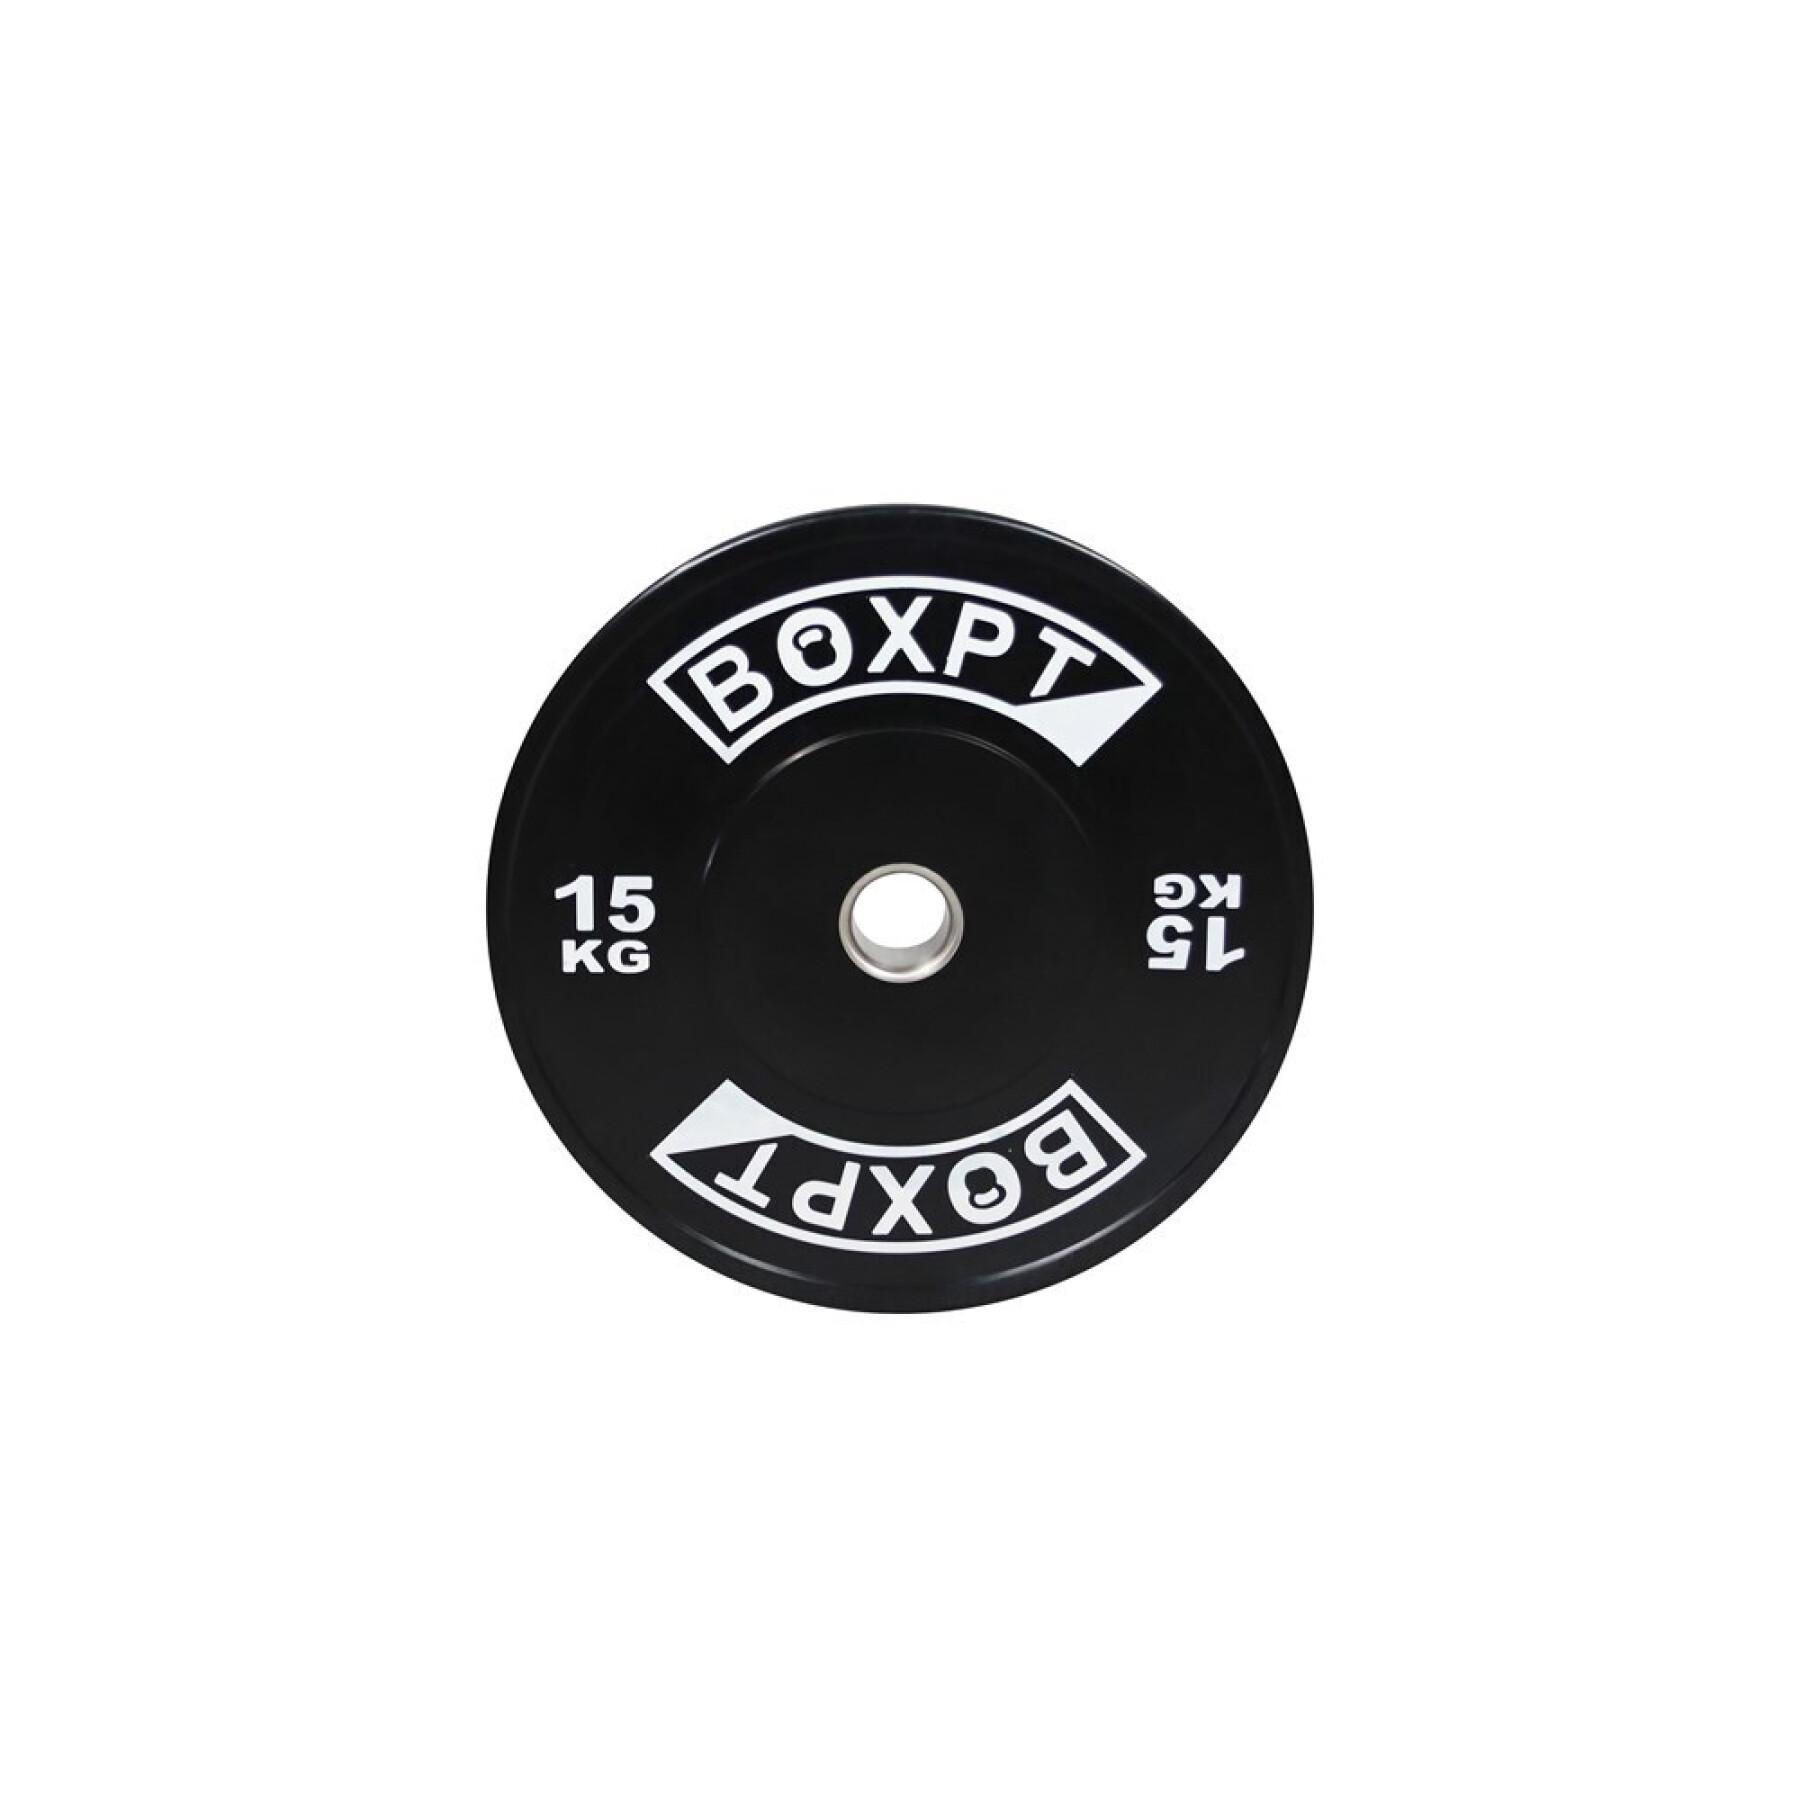 Disque de musculation Boxpt 2.0 - 15 kg